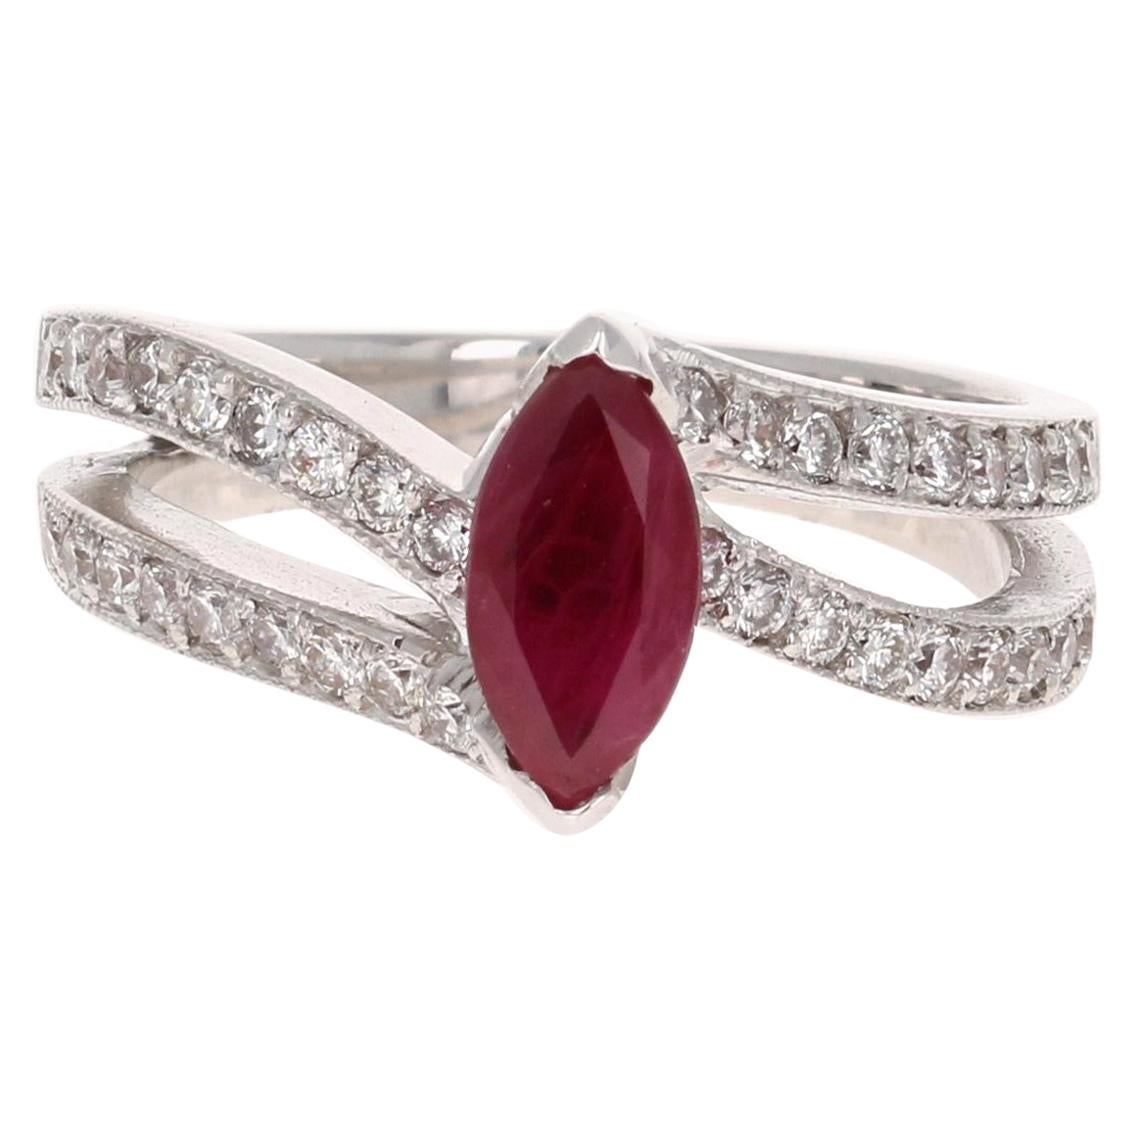 1.48 Carat Ruby Diamond 18 Karat White Gold Ring